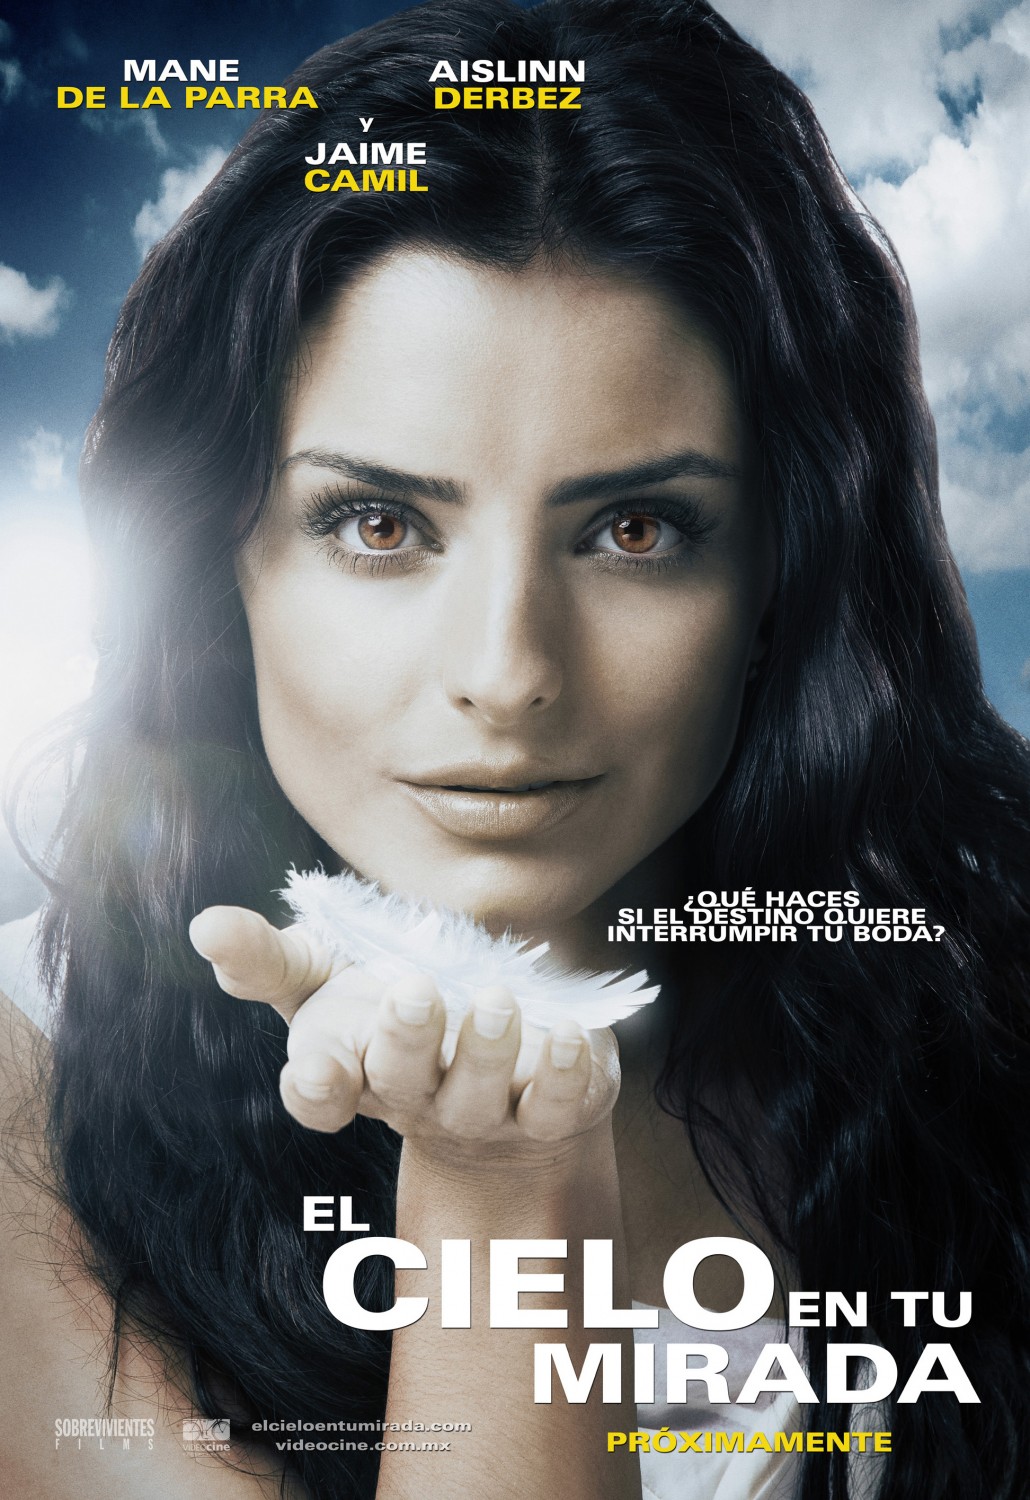 Extra Large Movie Poster Image for El cielo en tu mirada (#1 of 3)